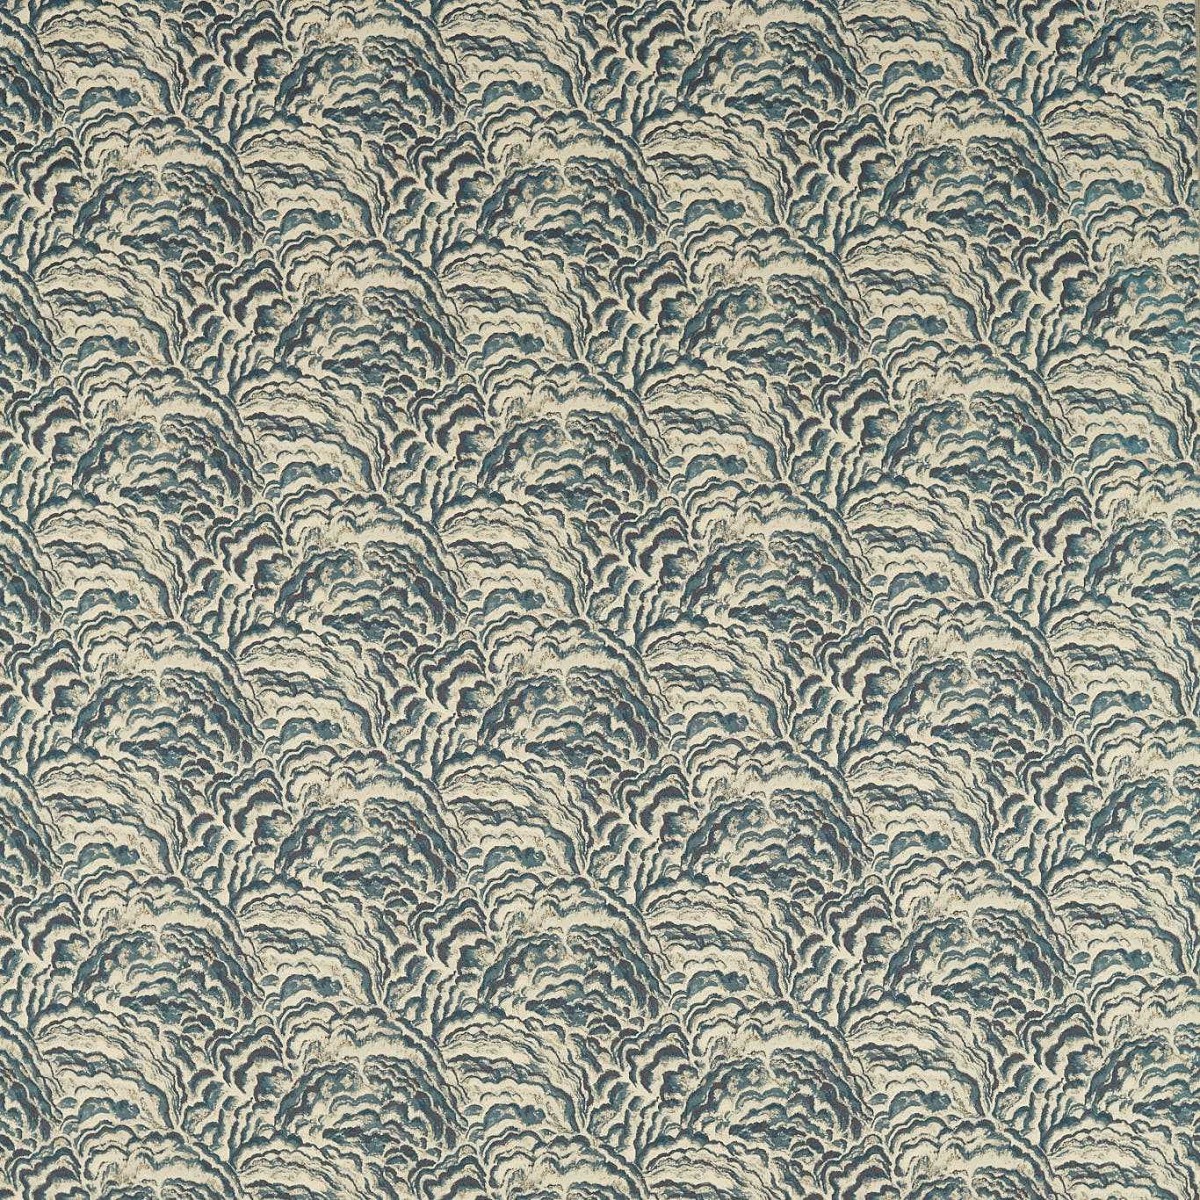 Lumino Kingfisher Fabric by Clarke & Clarke